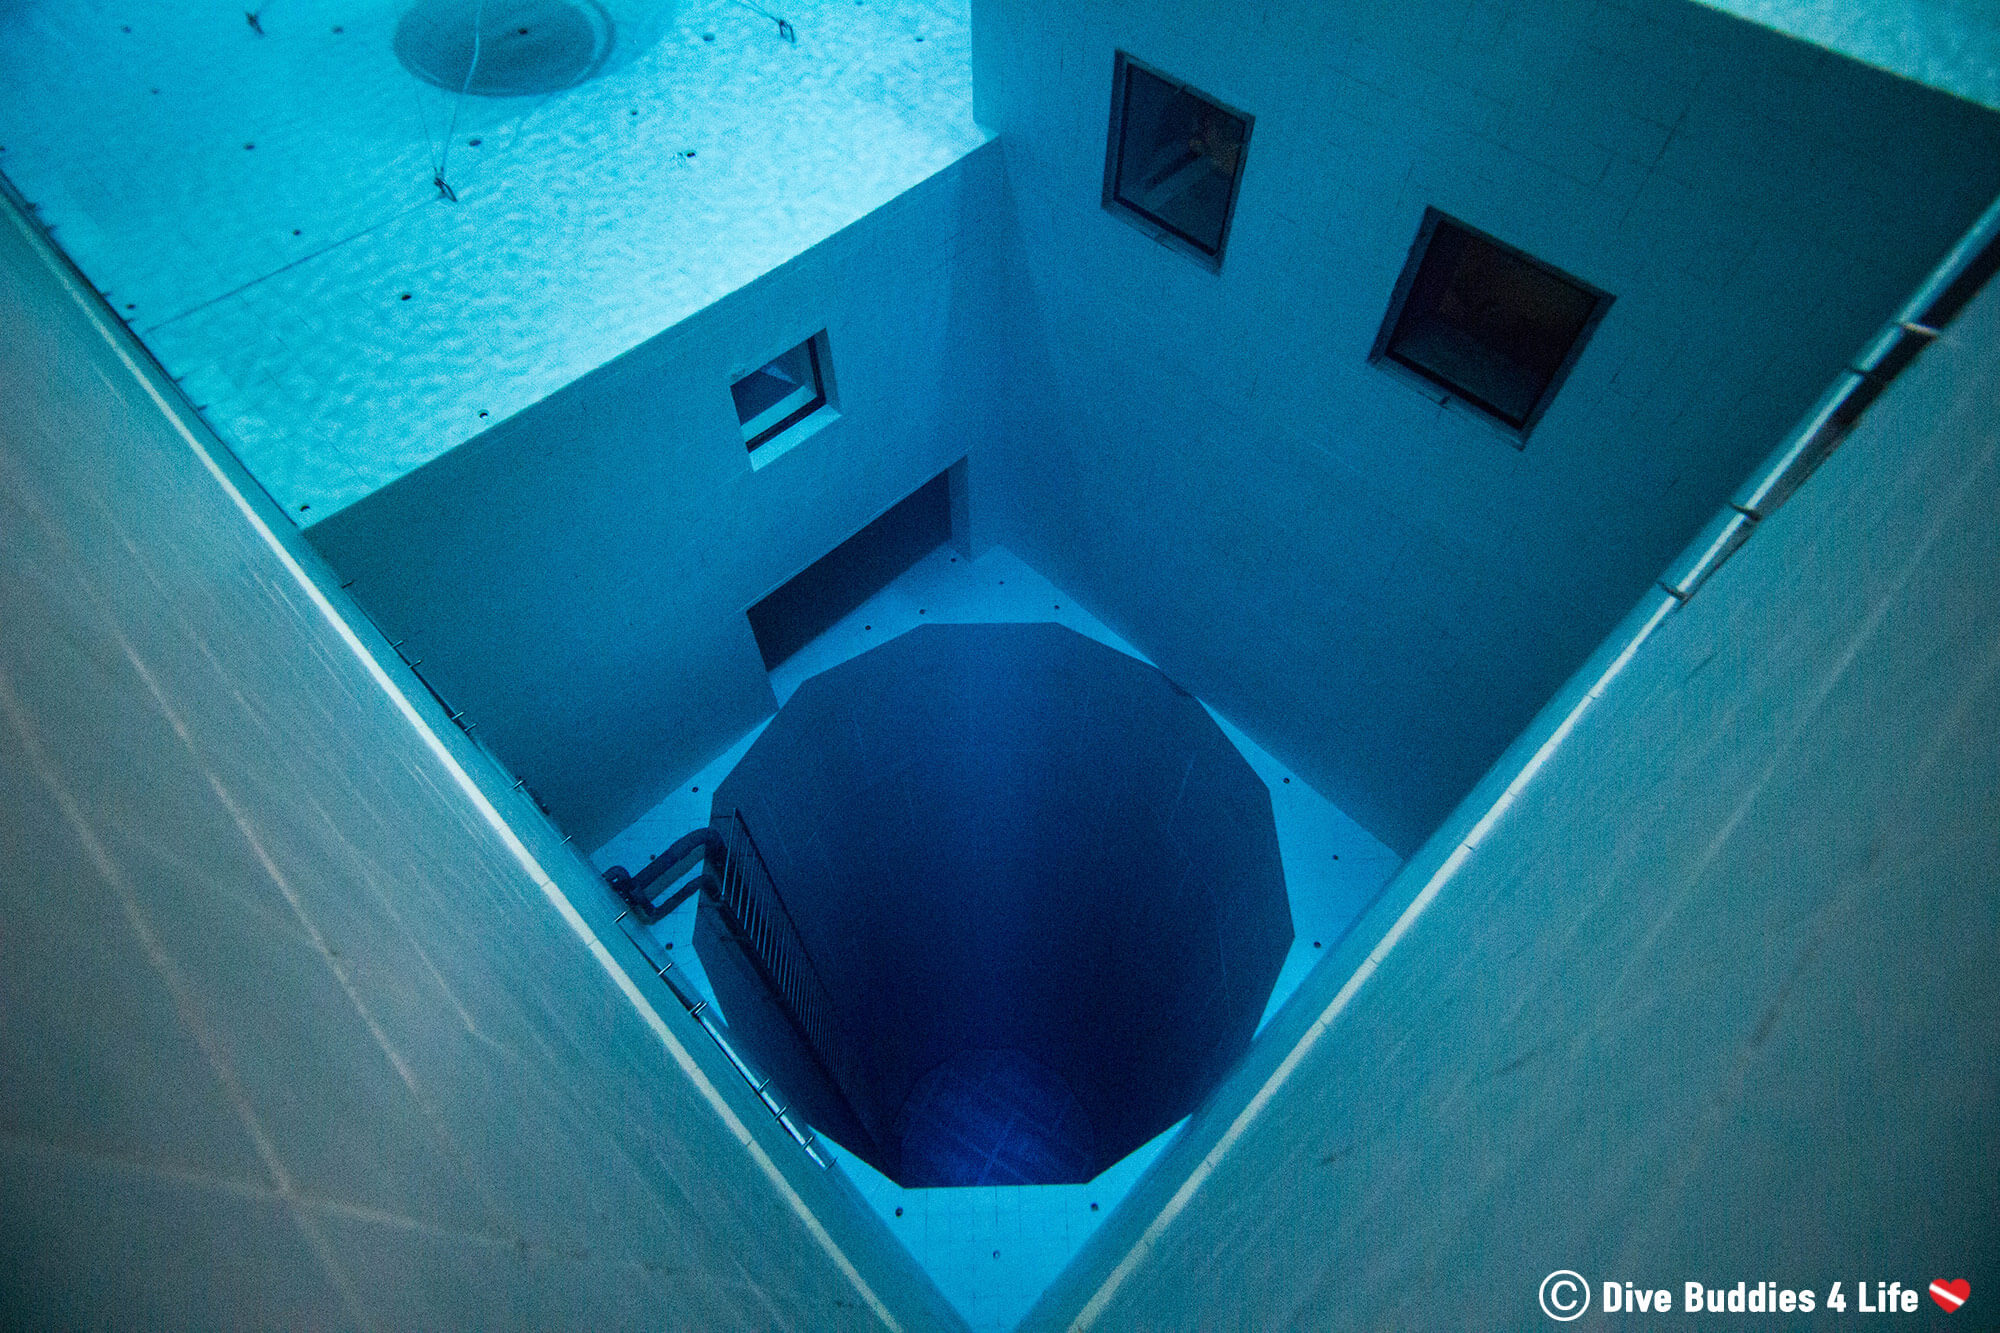 The-Deepest-Pit-in-the-Nemo-33-Indoor-Pool-in-Belgium-Europe-1.jpg